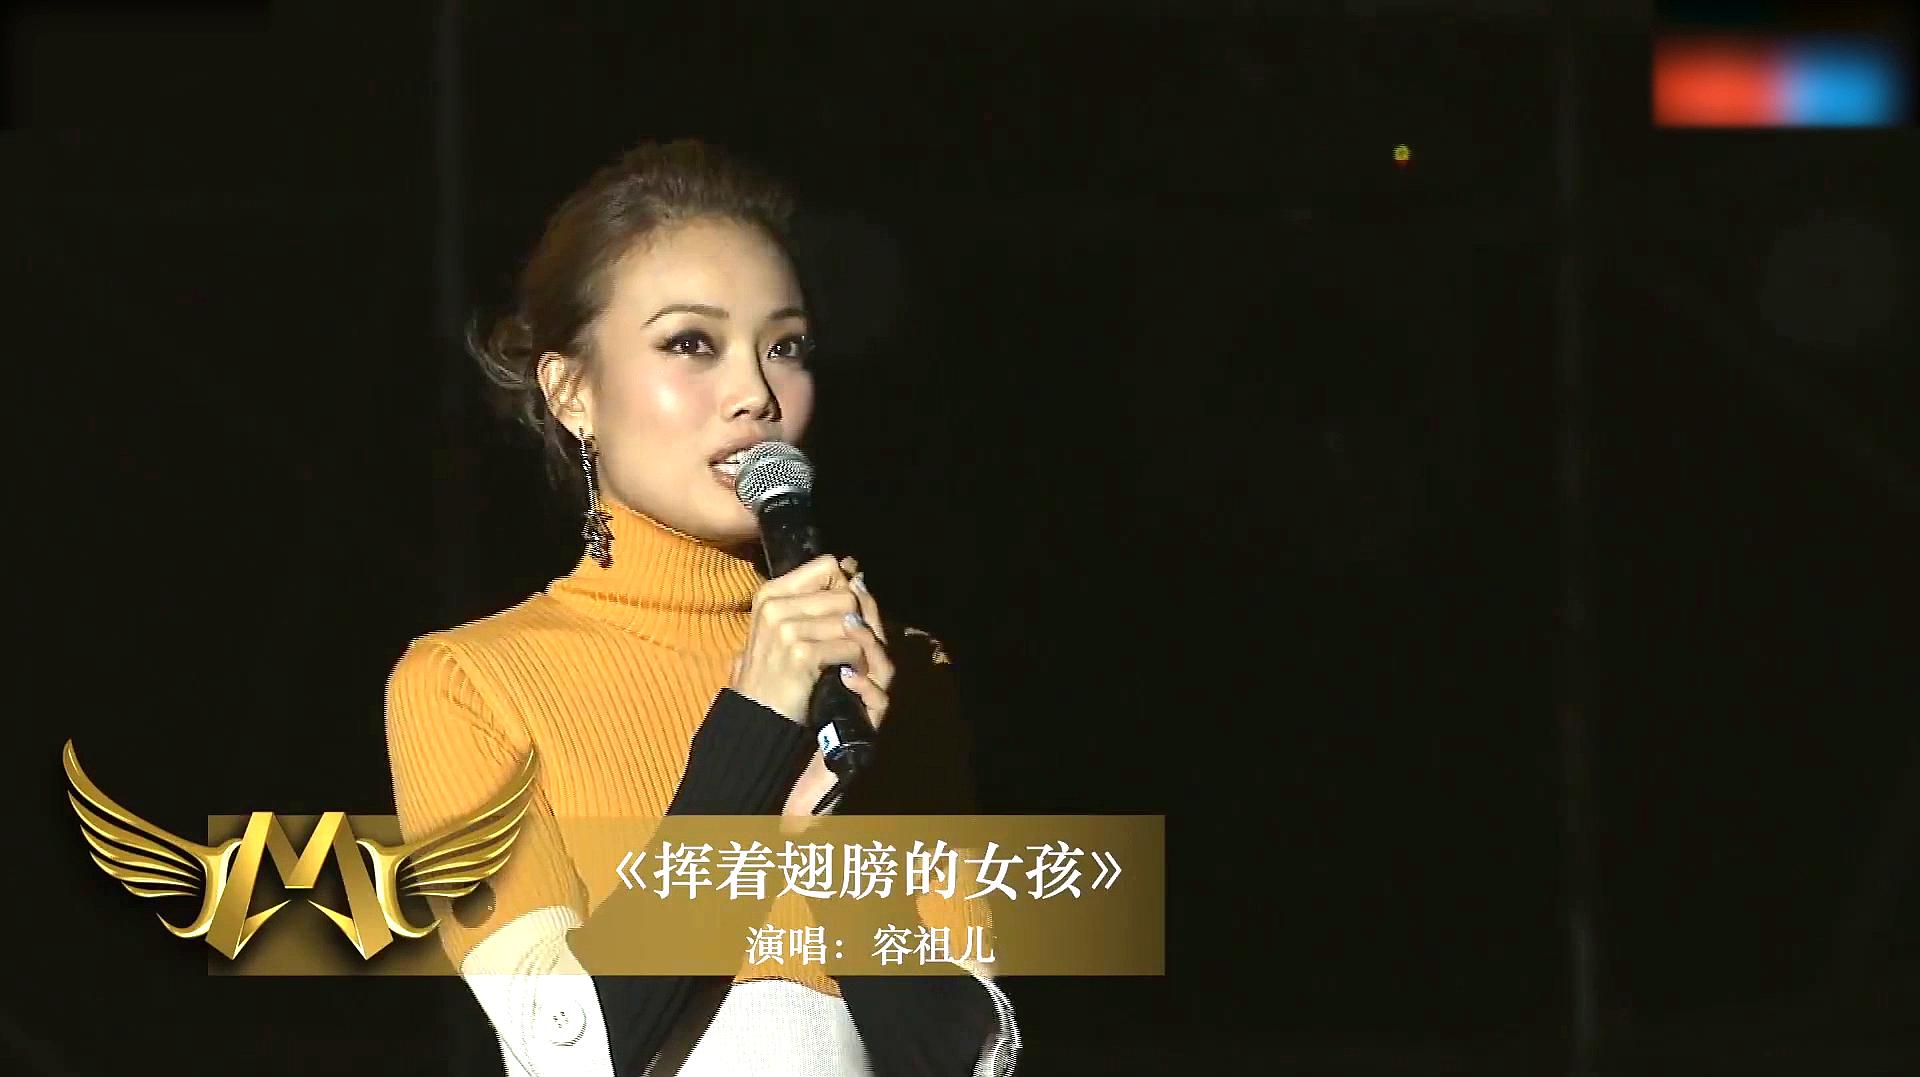 香港歌手容祖儿挥着翅膀的女孩,现场版